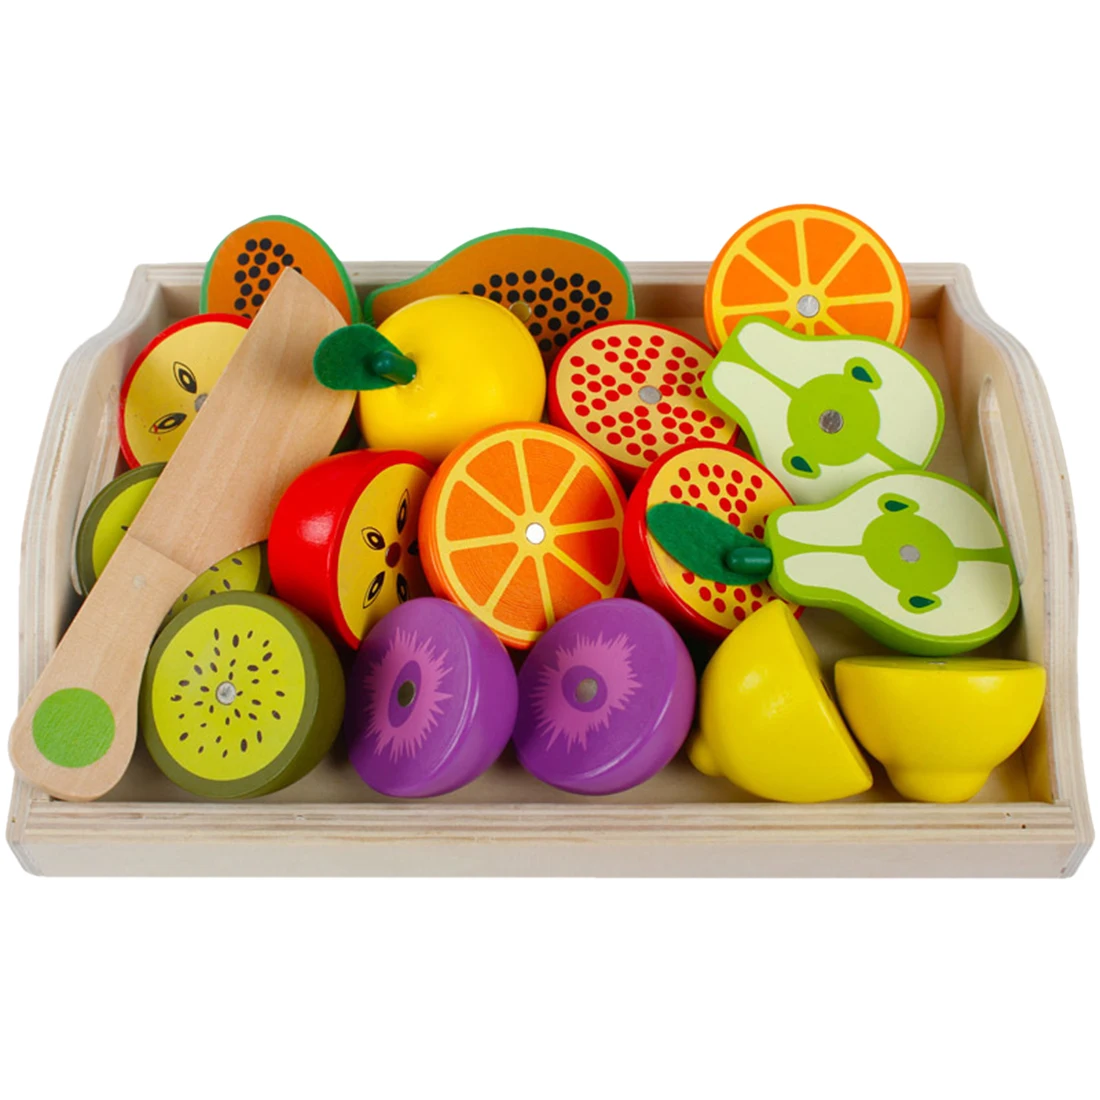 NFSTRIKE детей Кухня для фруктов и овощей, магнитные игрушки Комбинации резки набор игрушек для детей притворяться игрушка, игрушечный набор - Цвет: Темно-серый